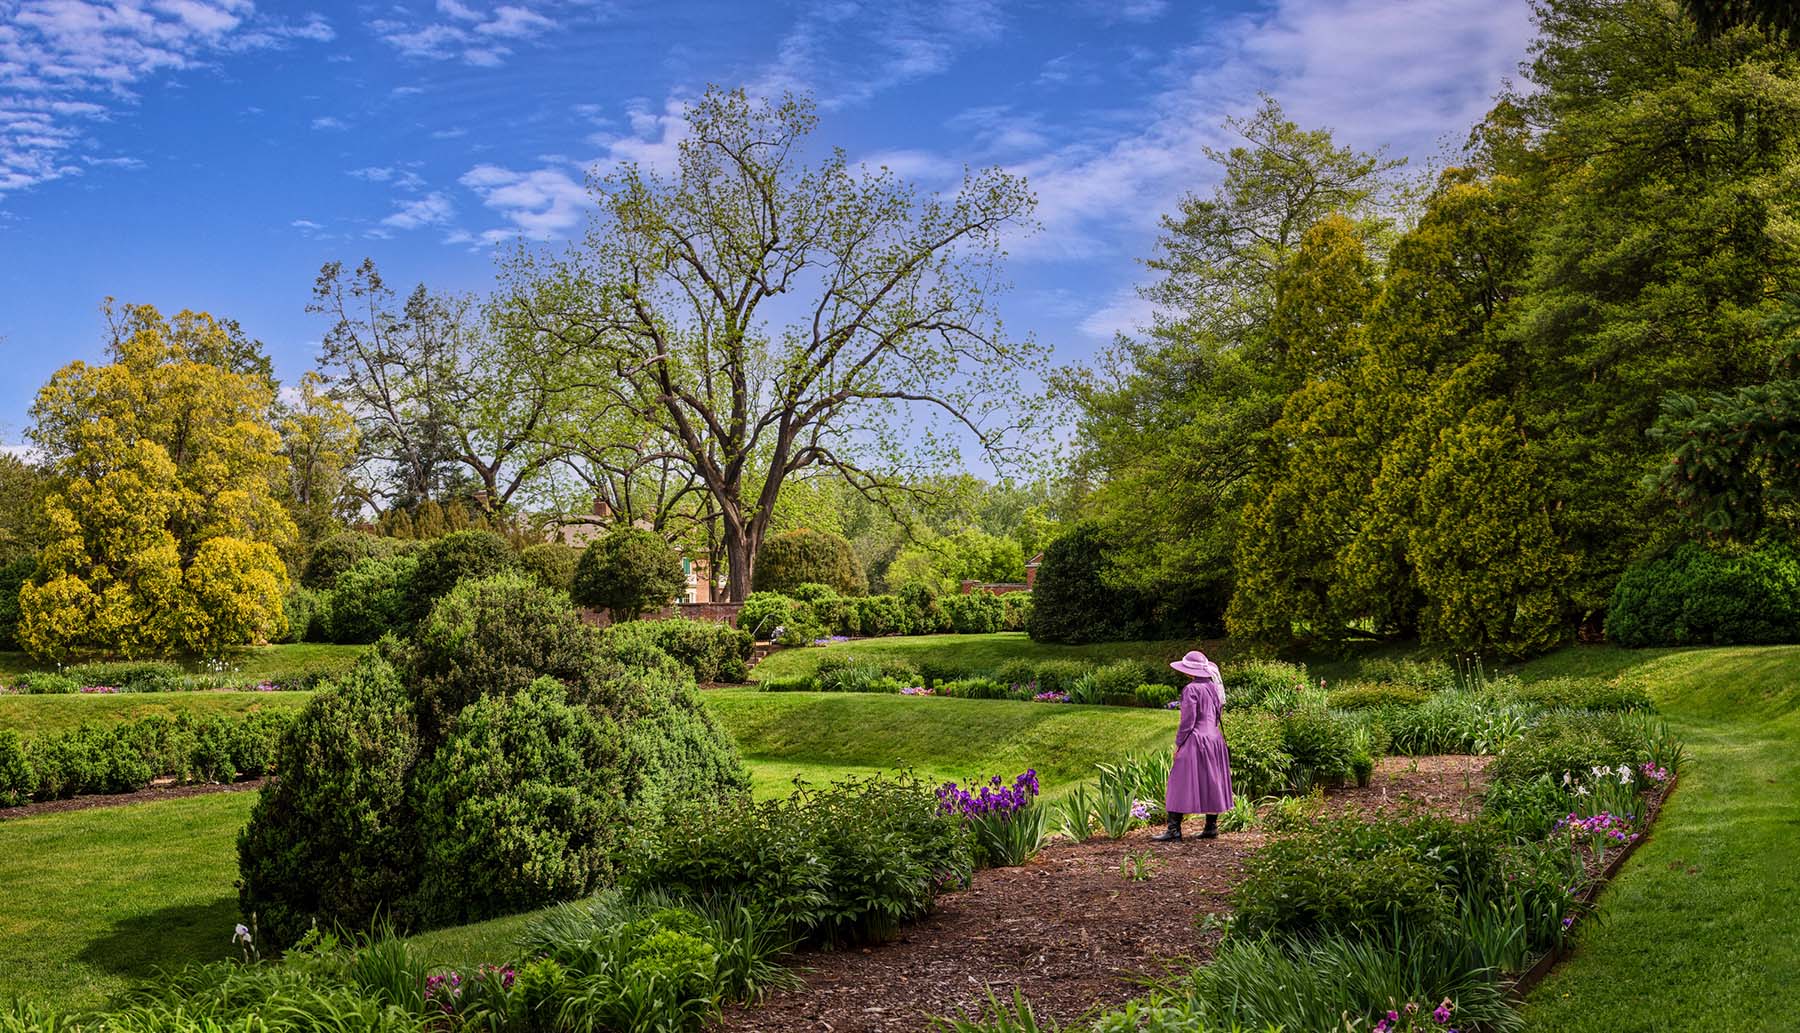 Women walks in a garden during spring